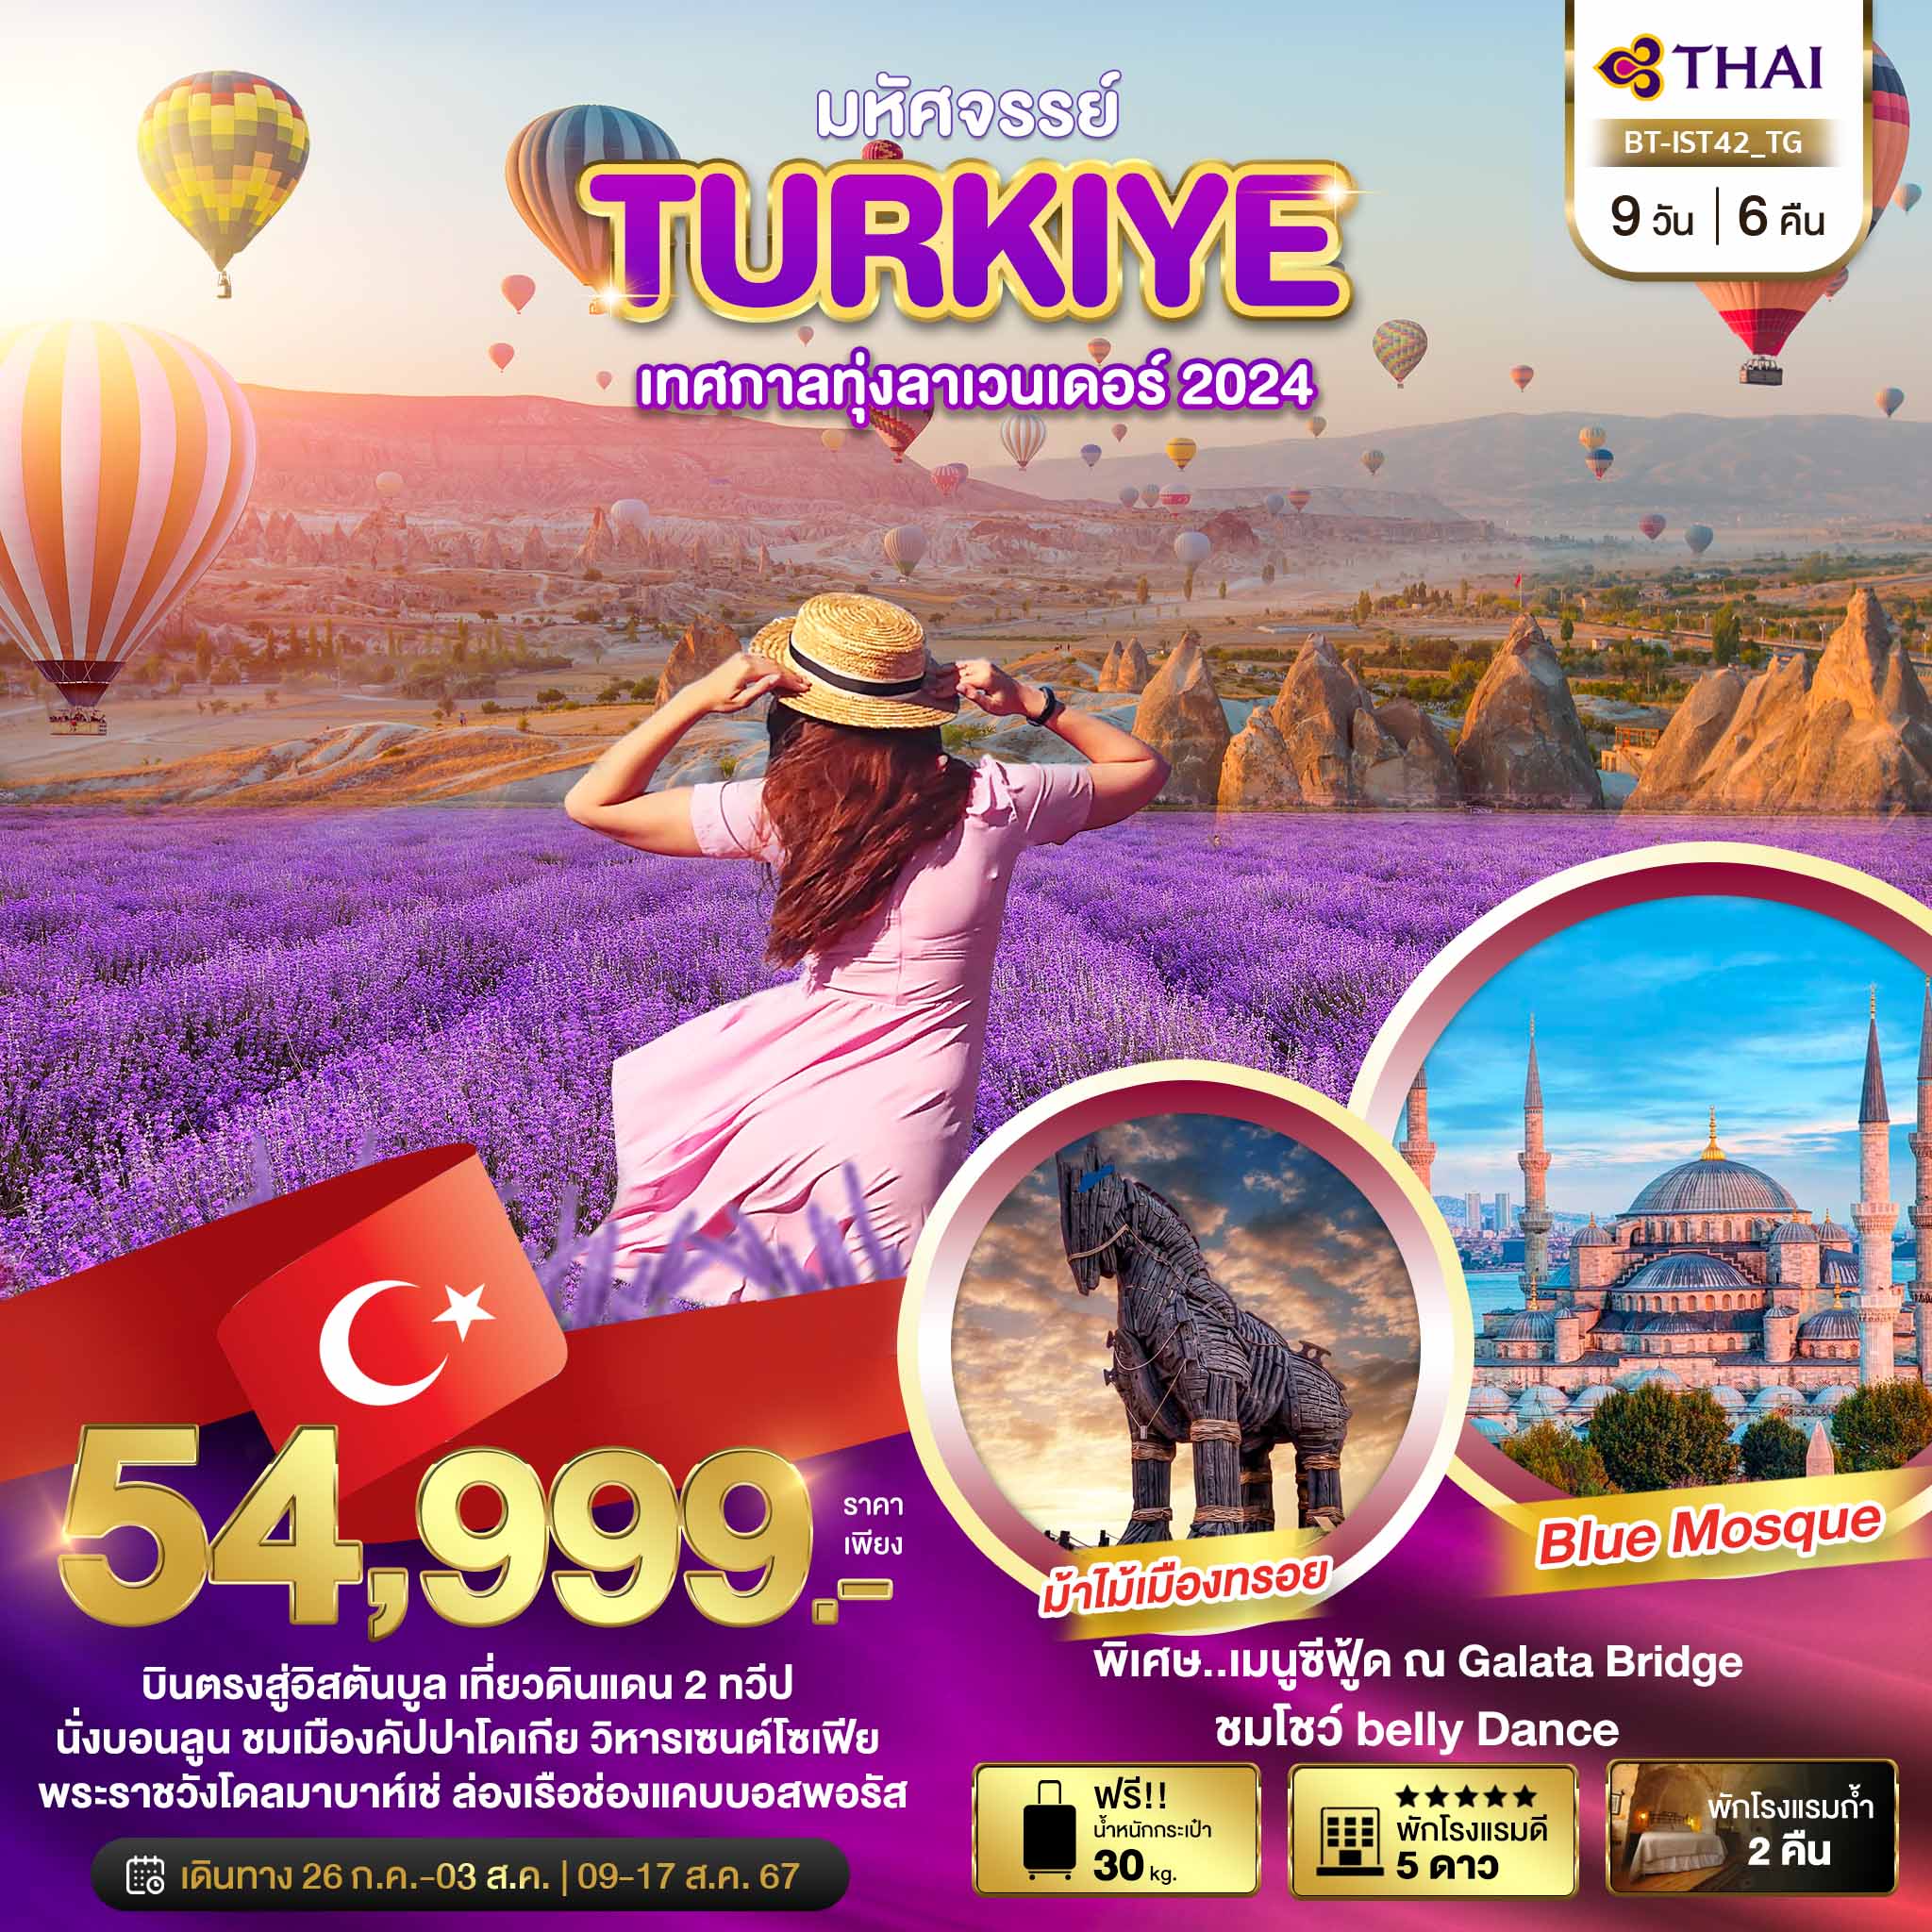 ทัวร์ตุรกี มหัศจรรย์..TURKIYE เทศกาลทุ่งลาเวนเดอร์ 2024